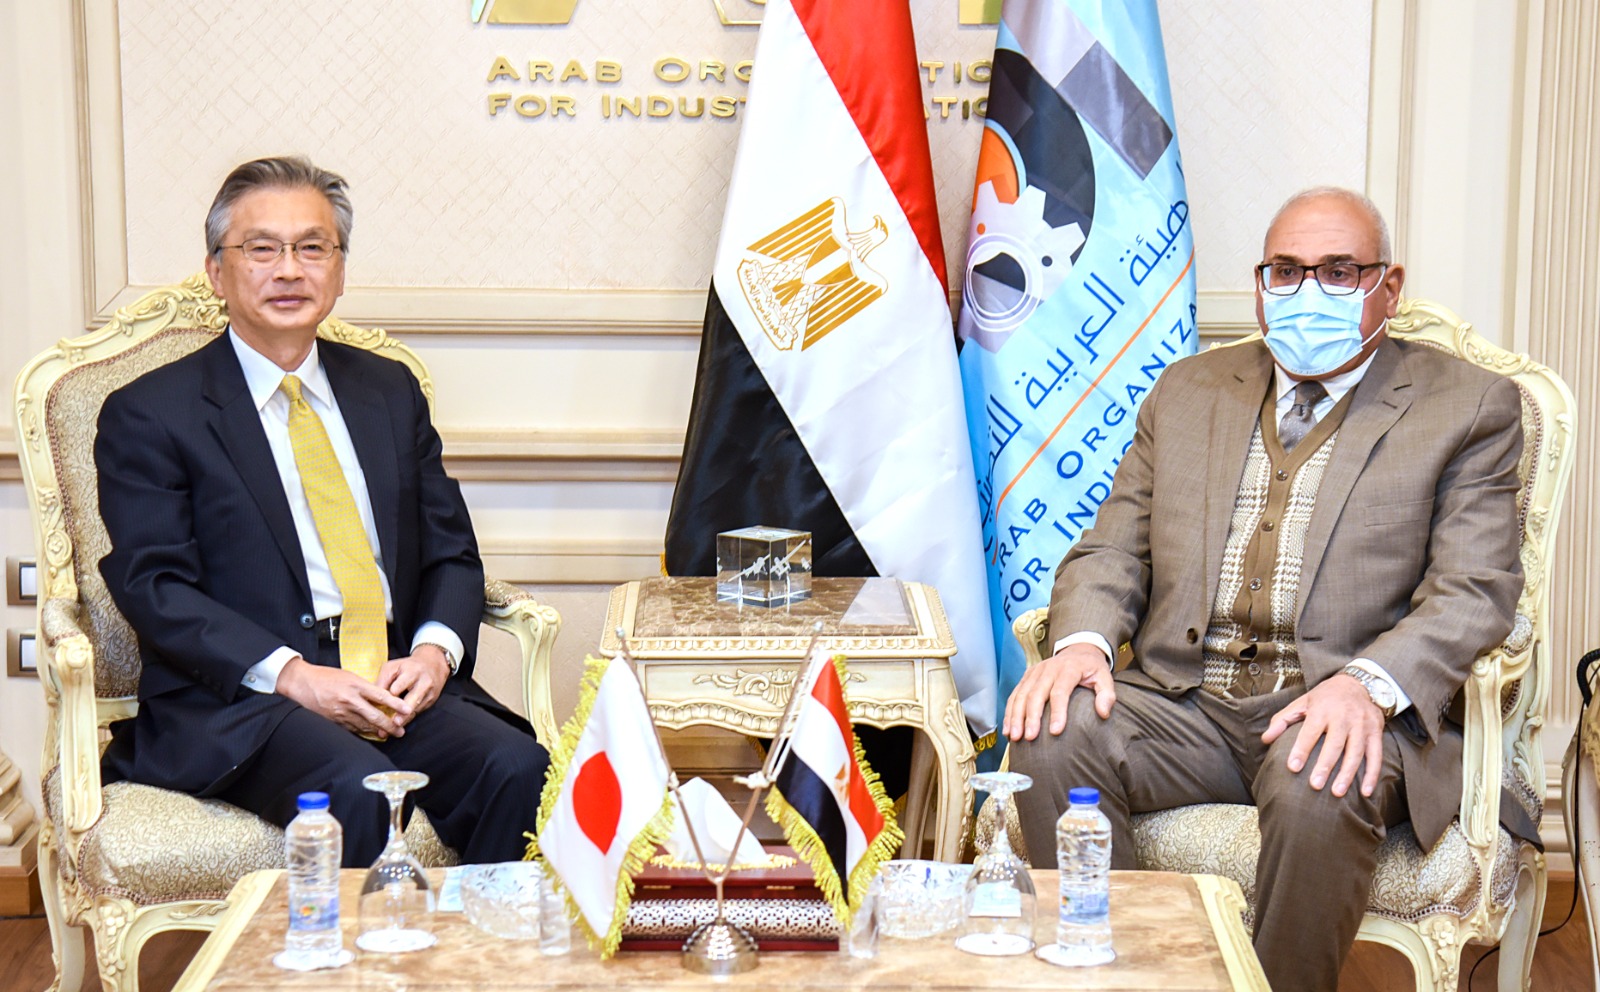 رئيس الهيئة العربية للتصنيع يبحث مع سفير دولة اليابان بالقاهرة  الخطوات التنفيدية لتعزيز الشراكة في مجالات التصنيع المختلفة